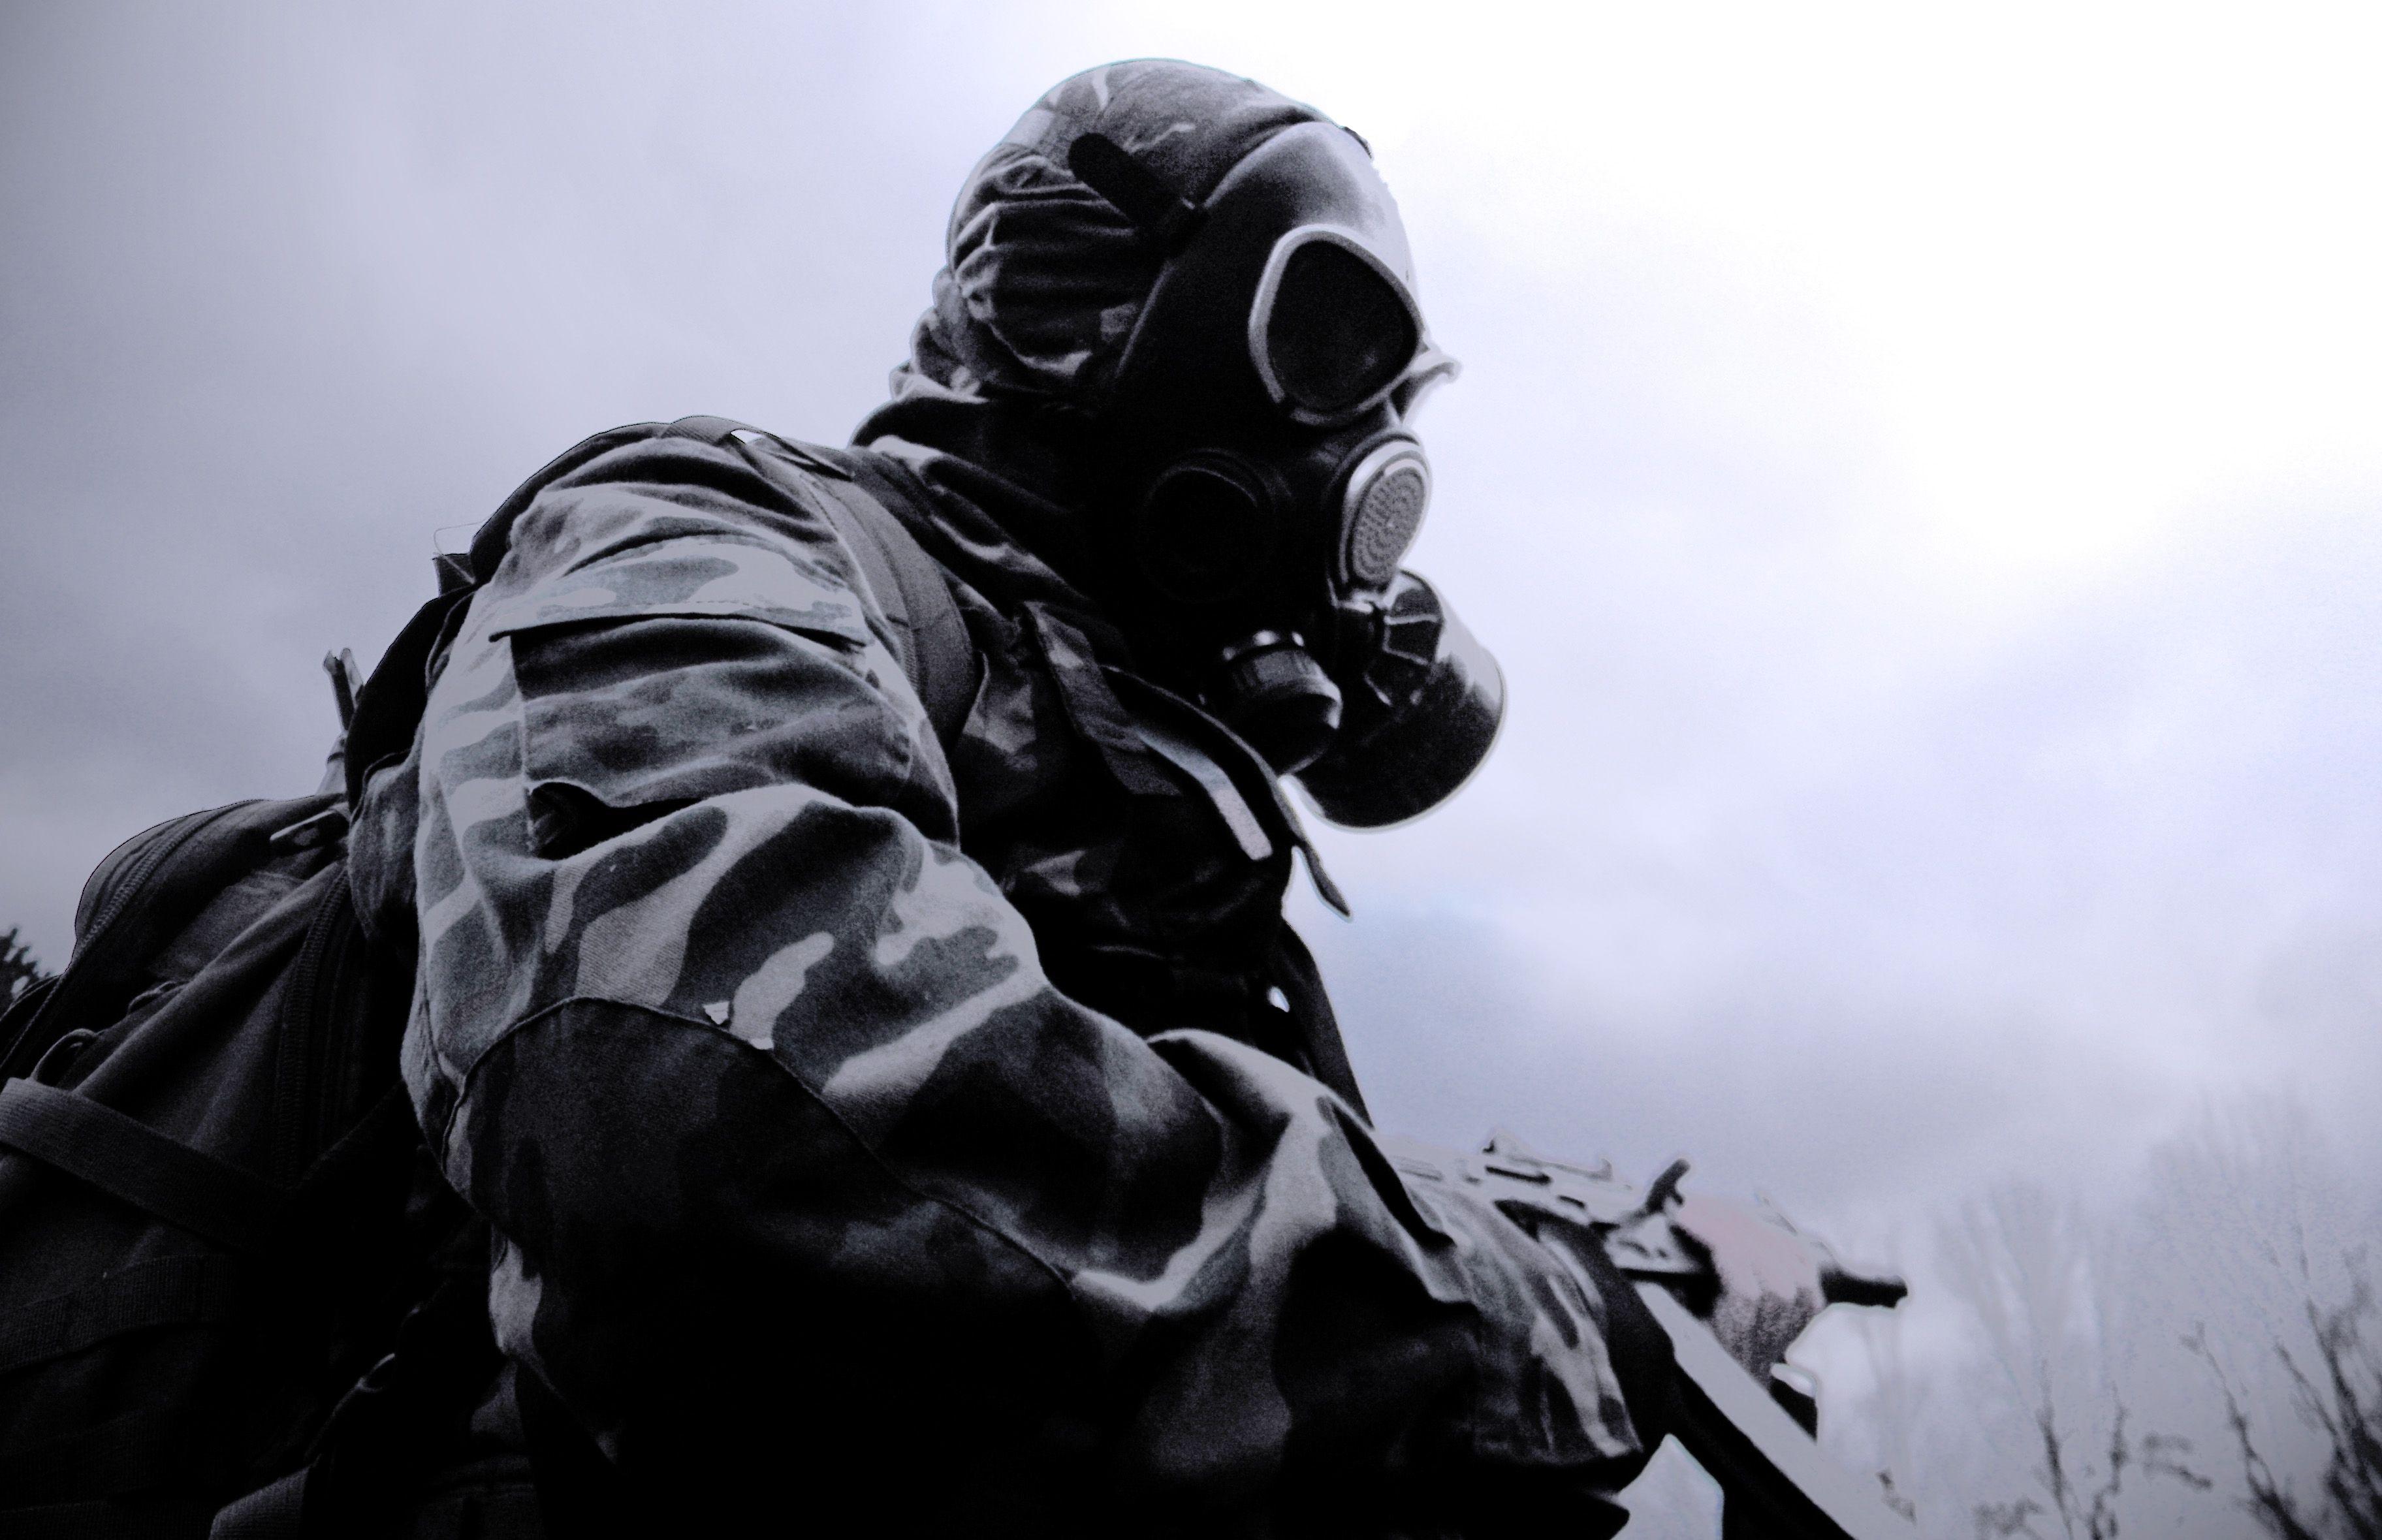 Gas Mask Radioactive Toxic  Free photo on Pixabay  Pixabay